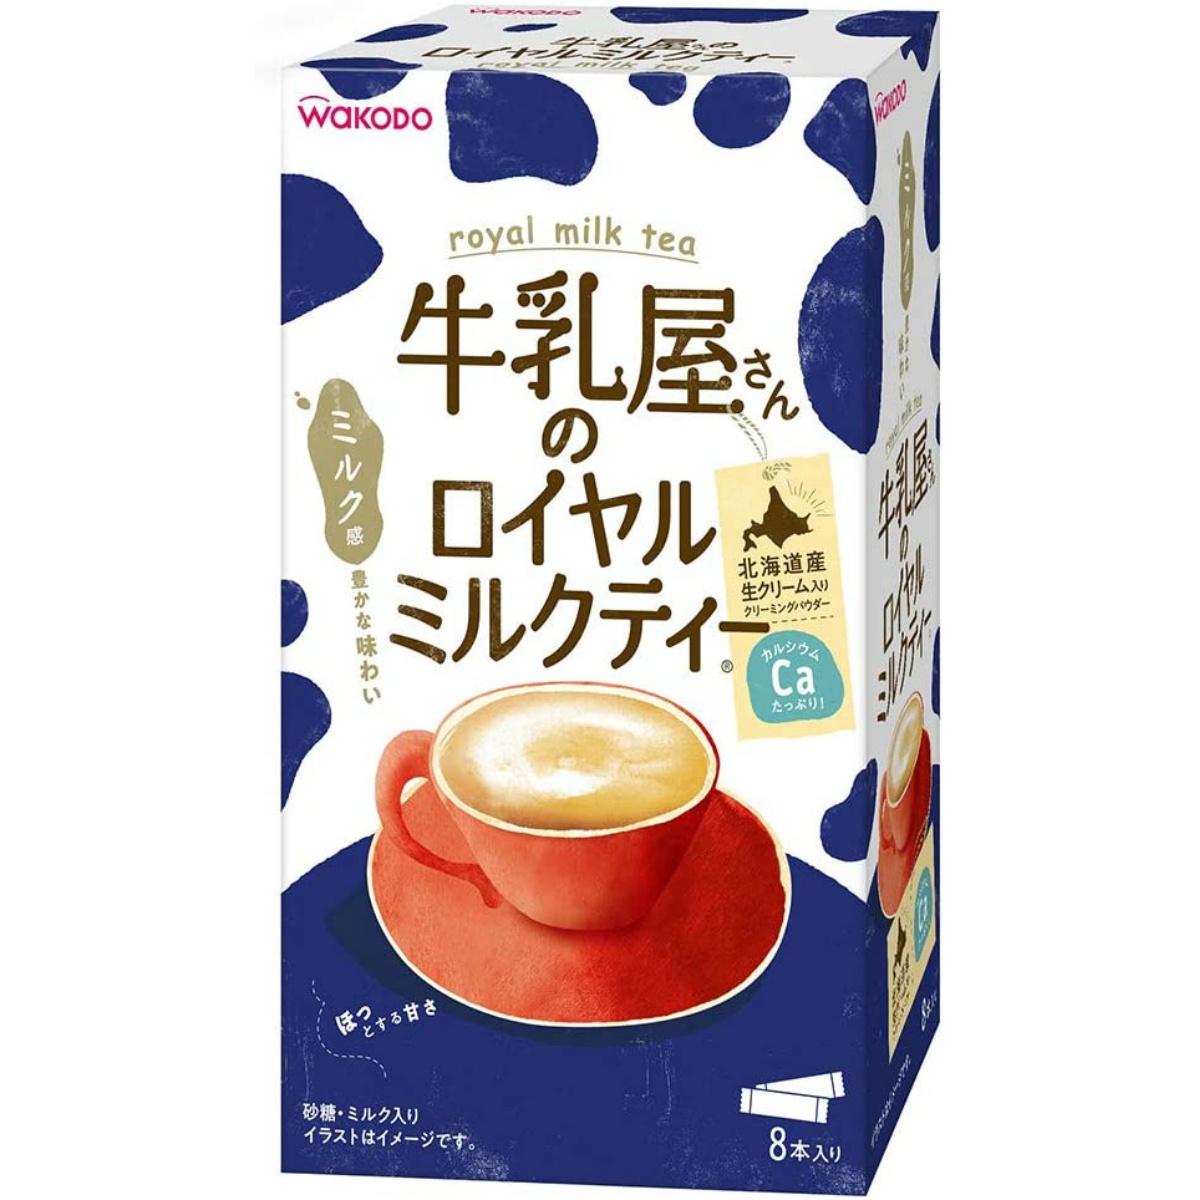 Быстрорастворимый черный чай с молоком Royal Milk Tea Wakado Asahi, 13 гр х 8 шт